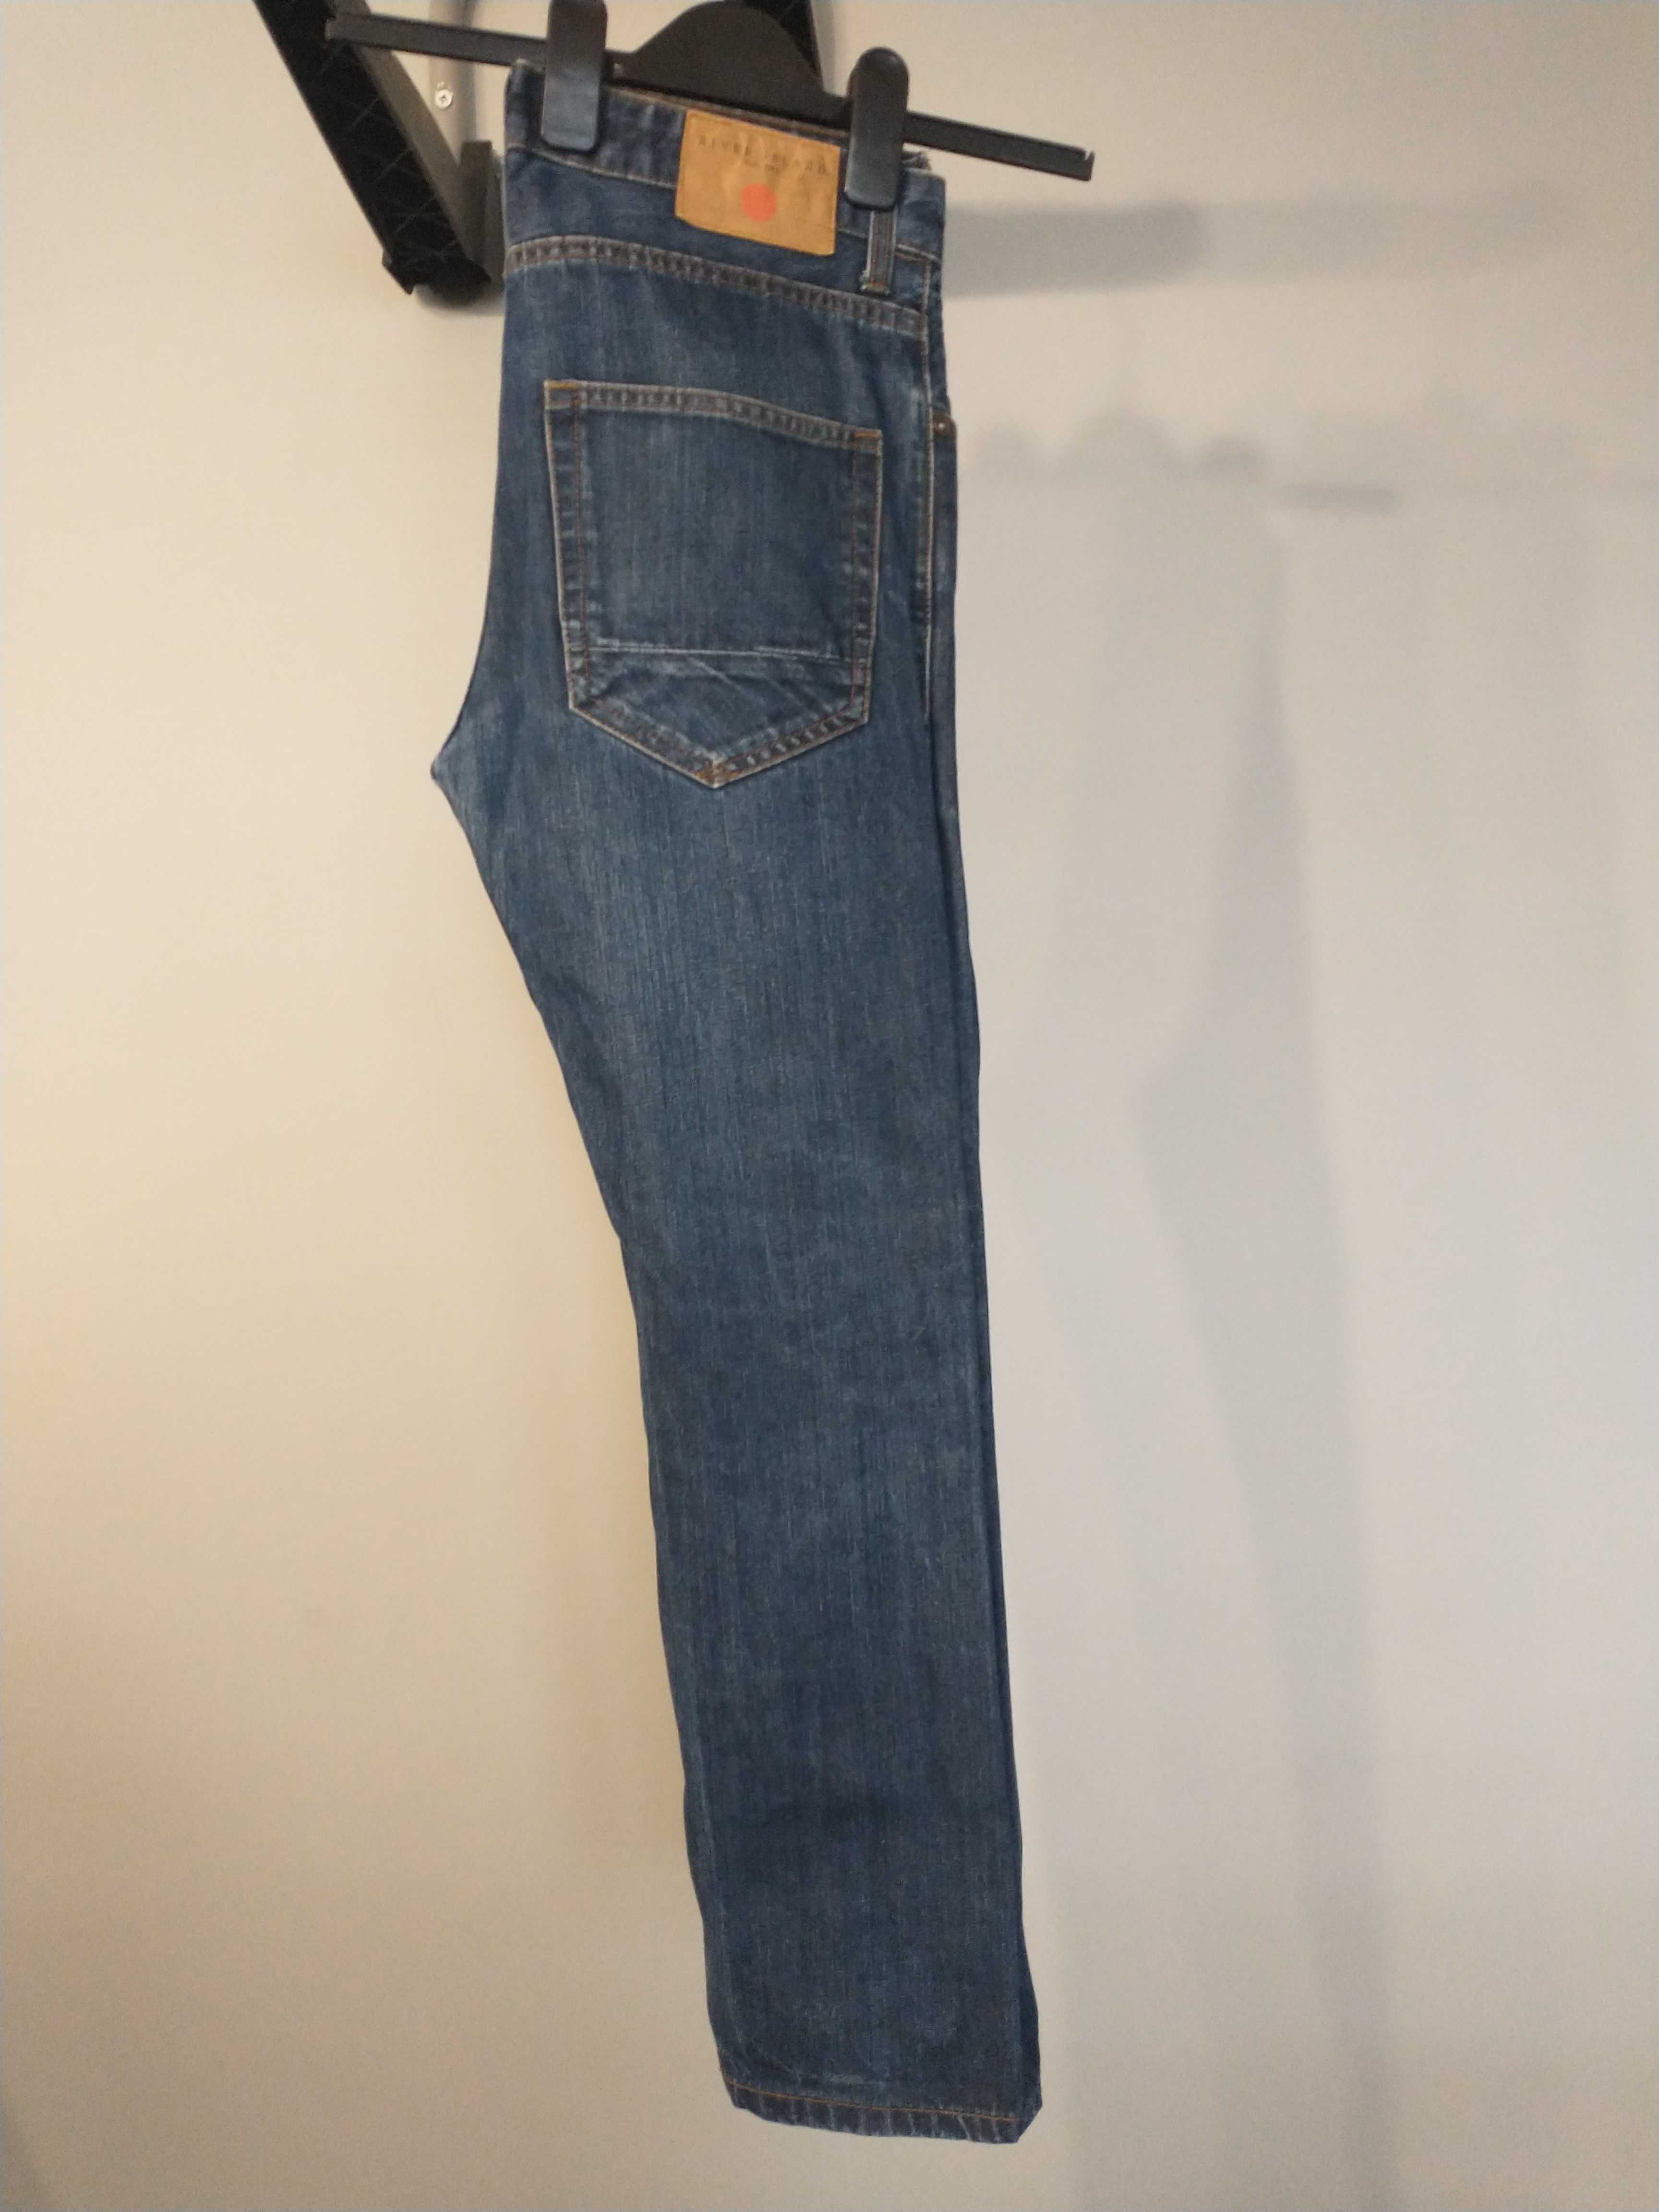 Spodnie jeansowe męskie, chłopięce River Island W30 L30, oryginalne